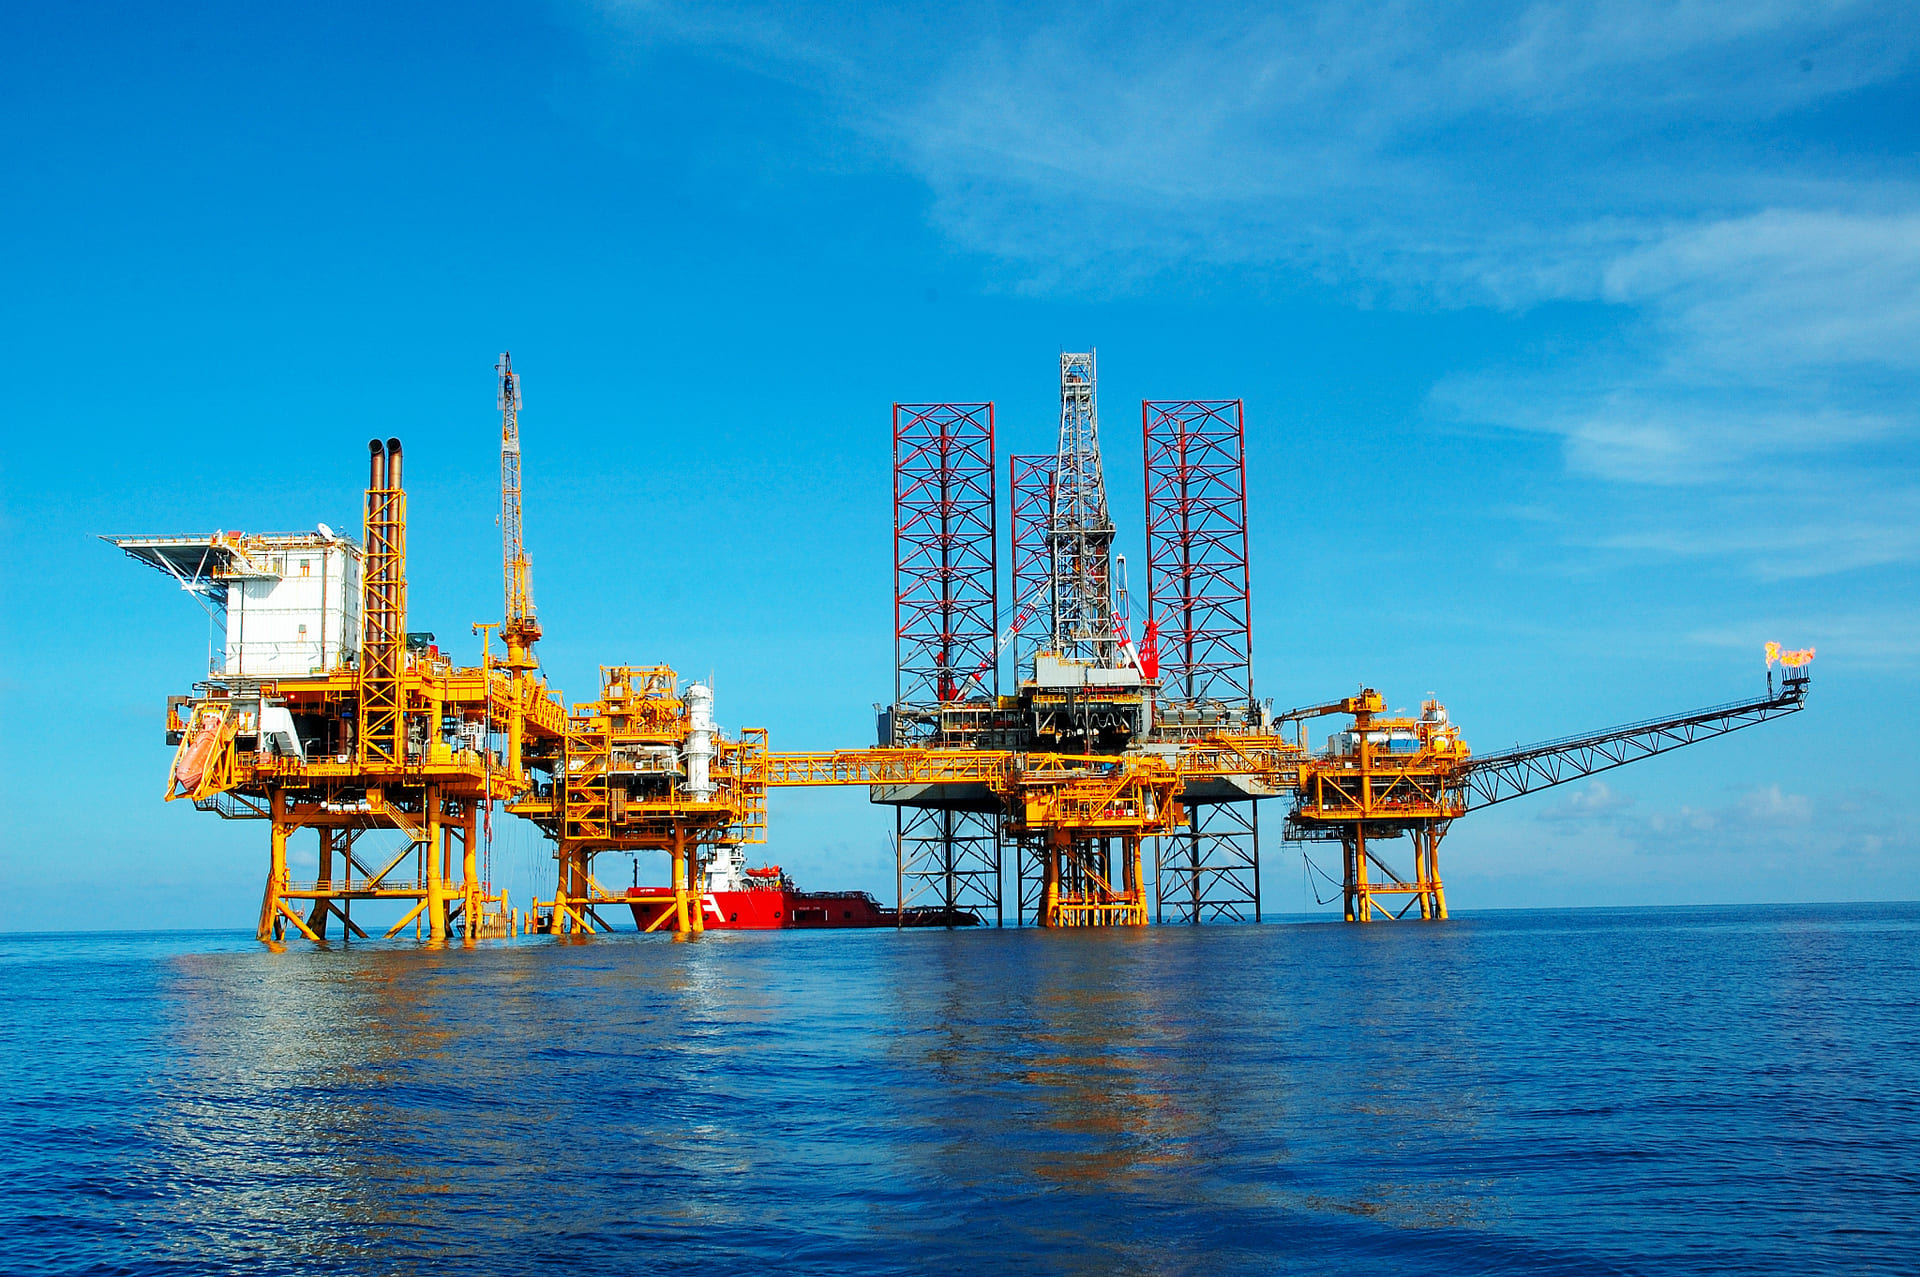 Chuyên gia Nguyễn Hồng Điệp khuyến nghị loạt cổ phiếu dầu khí tiềm năng, dự báo giá dầu tiếp tục leo thang